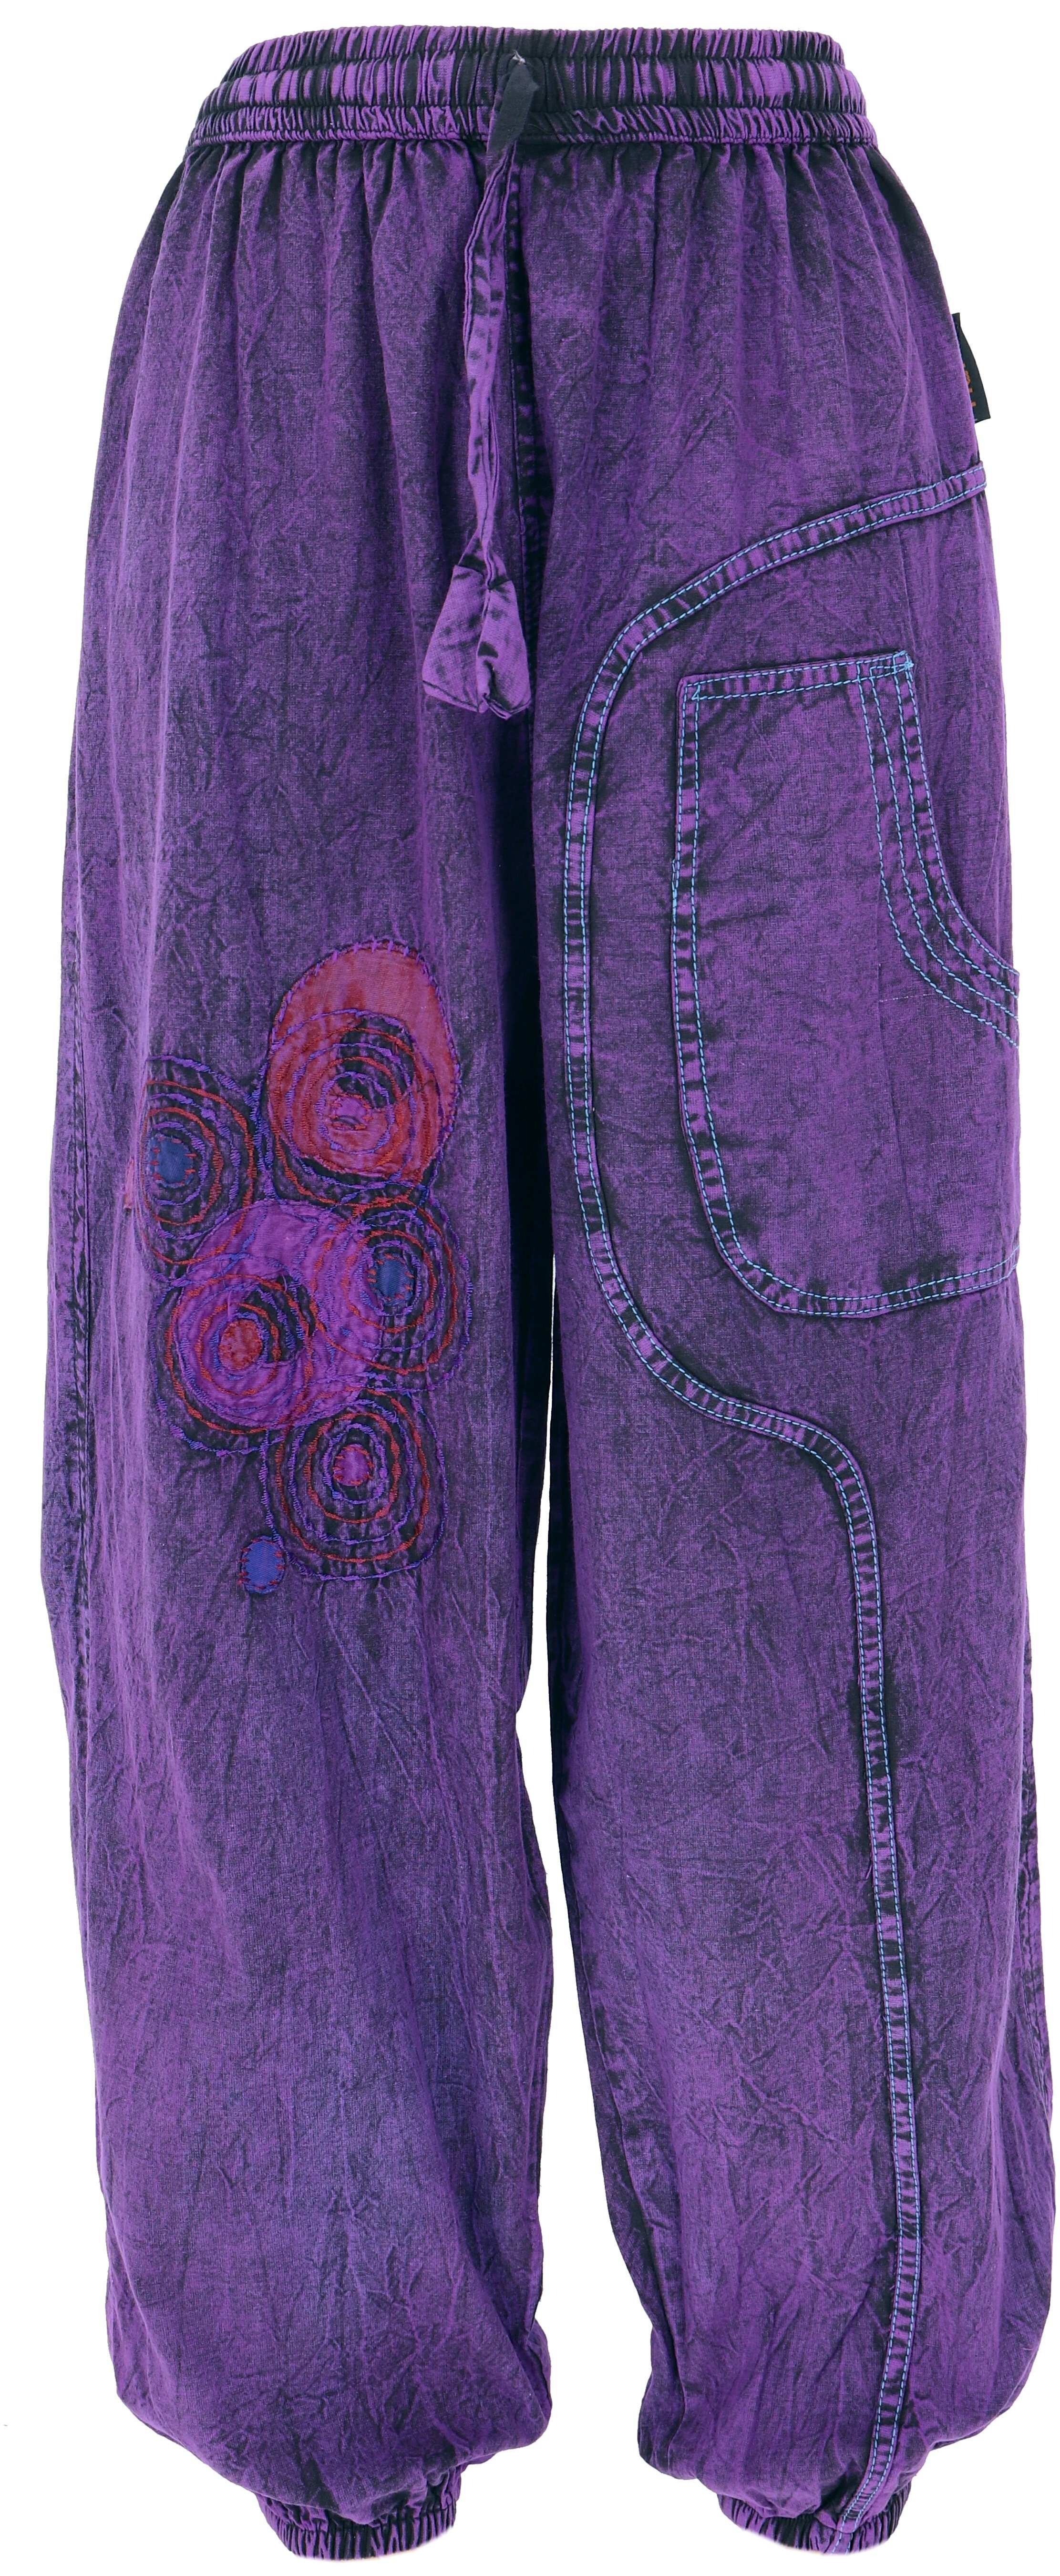 Guru-Shop Relaxhose Bestickte Aladinhose, Boho Baumwollhose,.. alternative Bekleidung lila